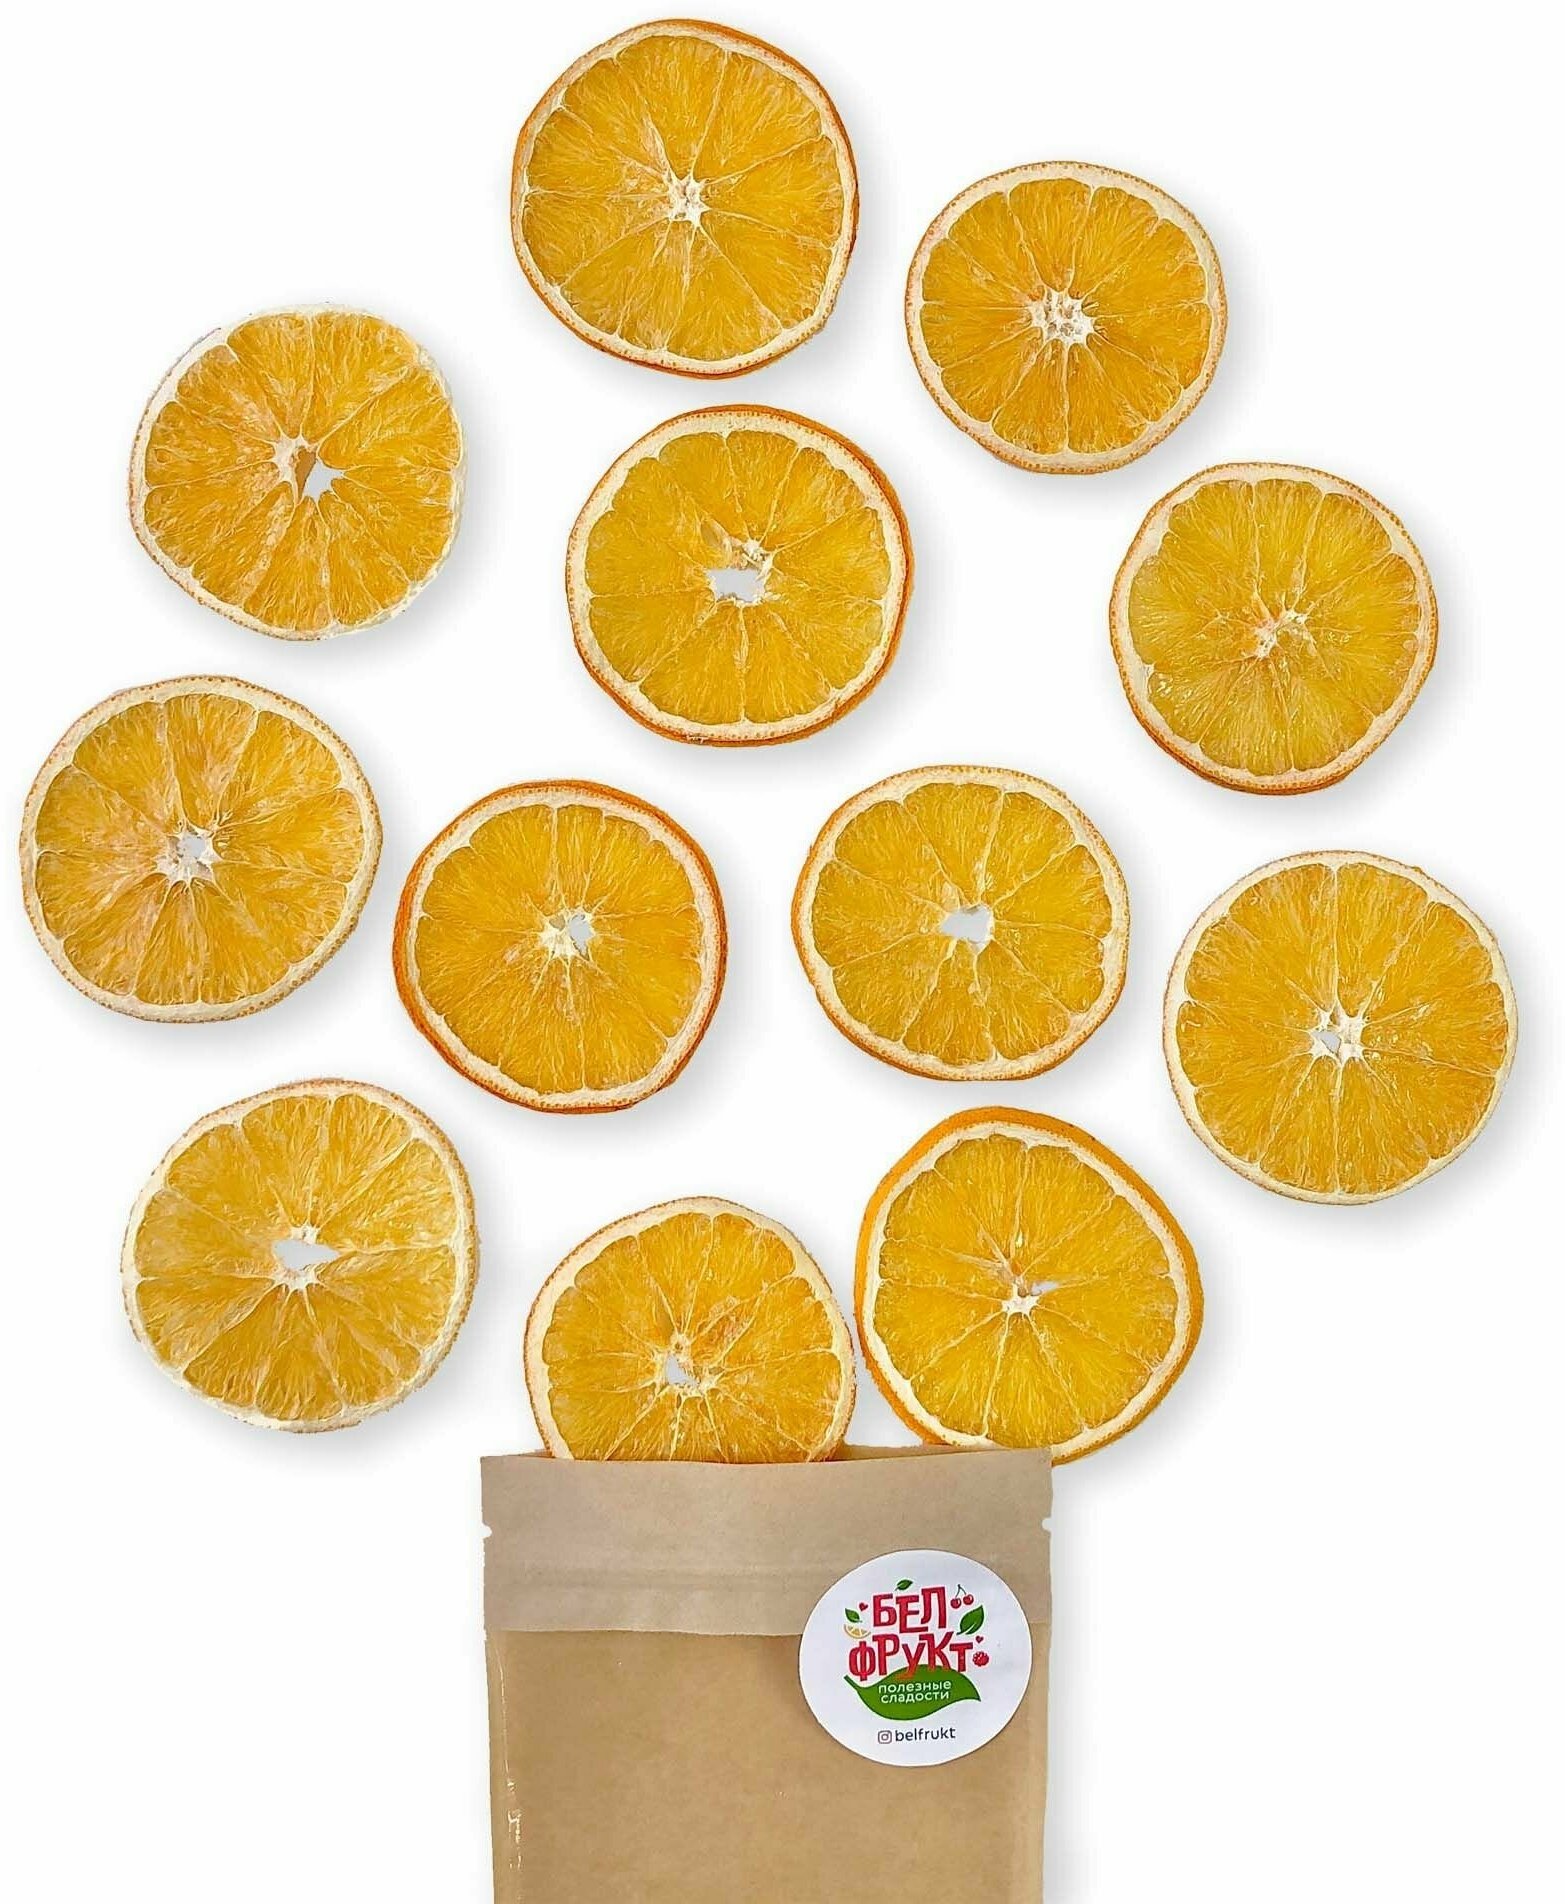 Белфрукт сушеный Апельсин, размер М, 100% натуральный состав (экопродукт), полезный подарок или перекус, гостинец детям и десерт без сахара